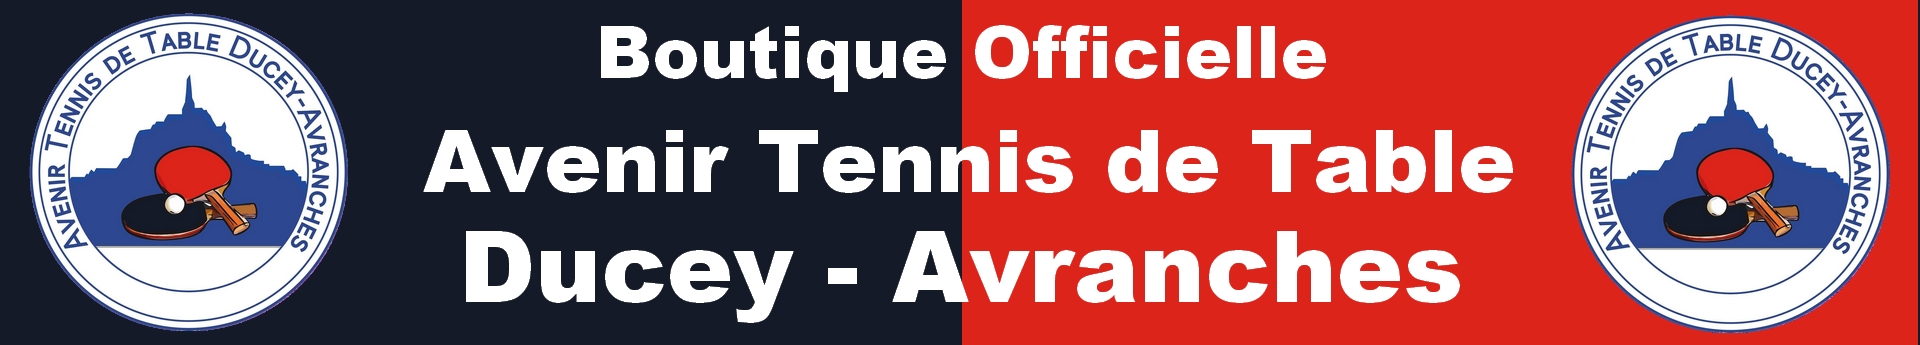 Avenir Tennis de Table Ducey - Avranches Title Image